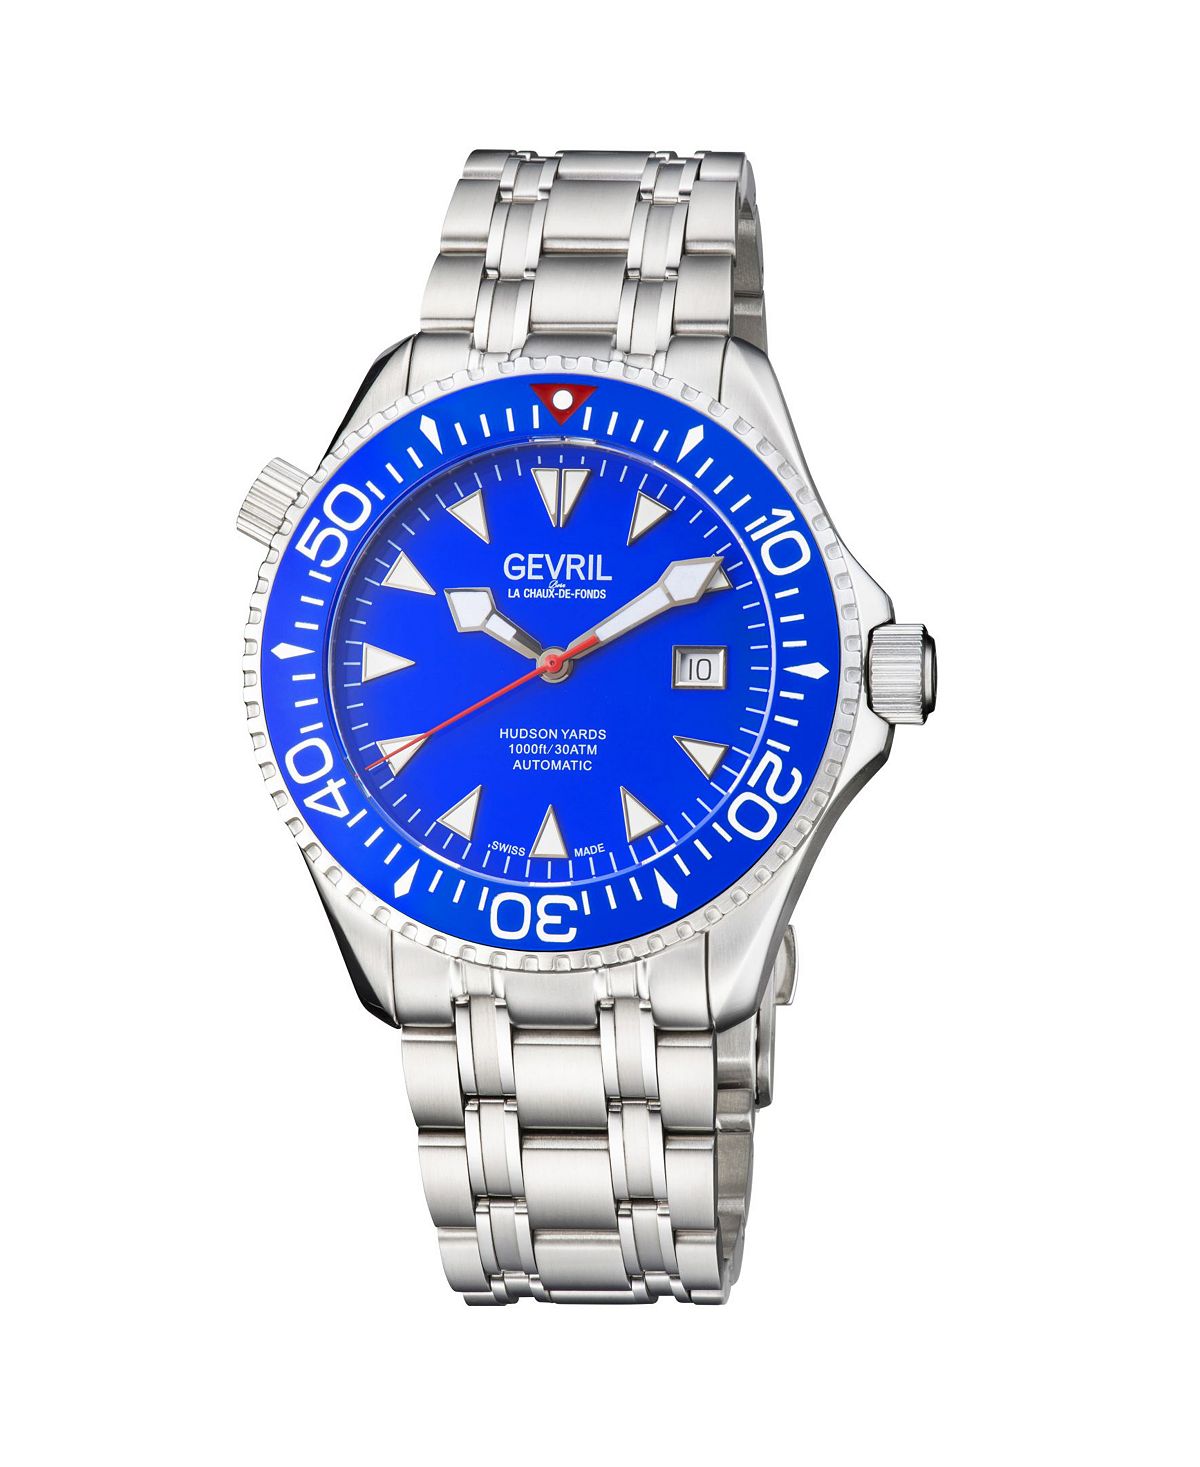 Мужские часы Hudson Yards 48801 швейцарские автоматические часы-браслет 43 мм Gevril фото